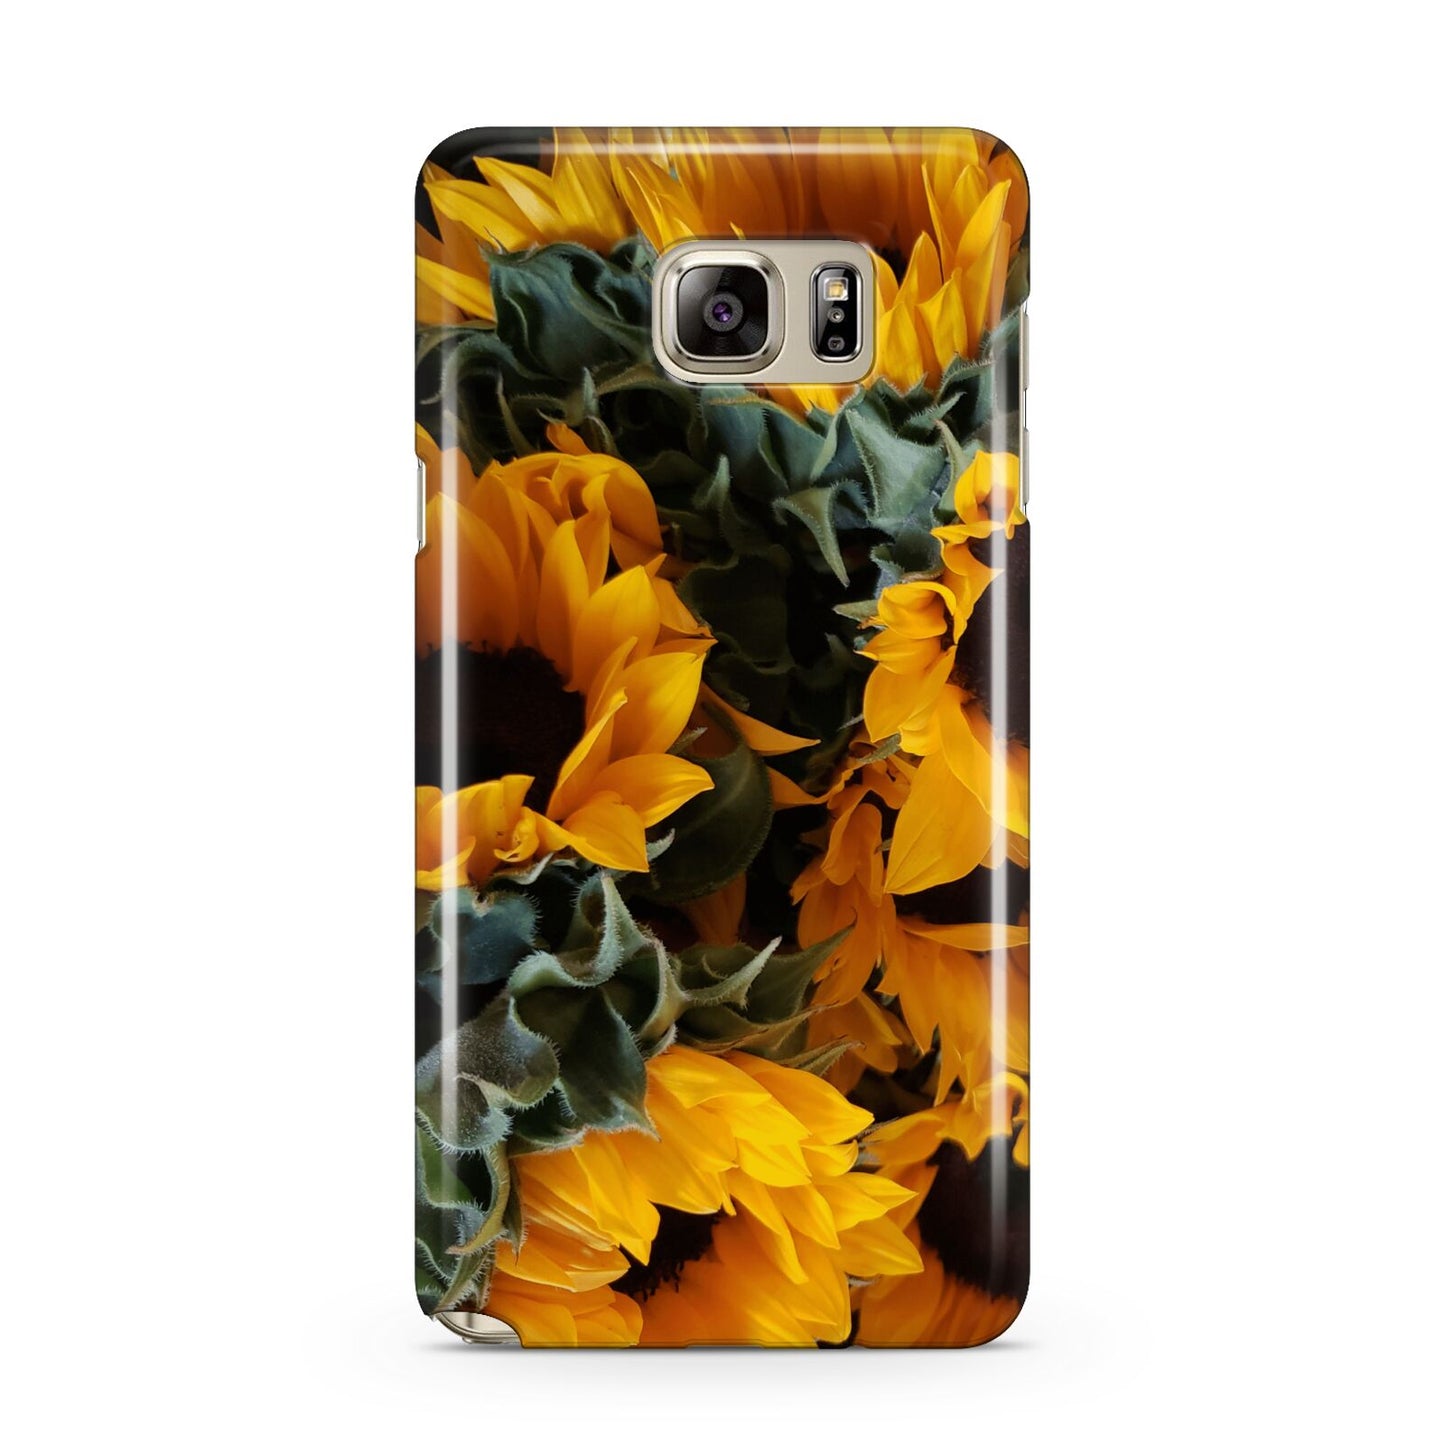 Sunflower Samsung Galaxy Note 5 Case